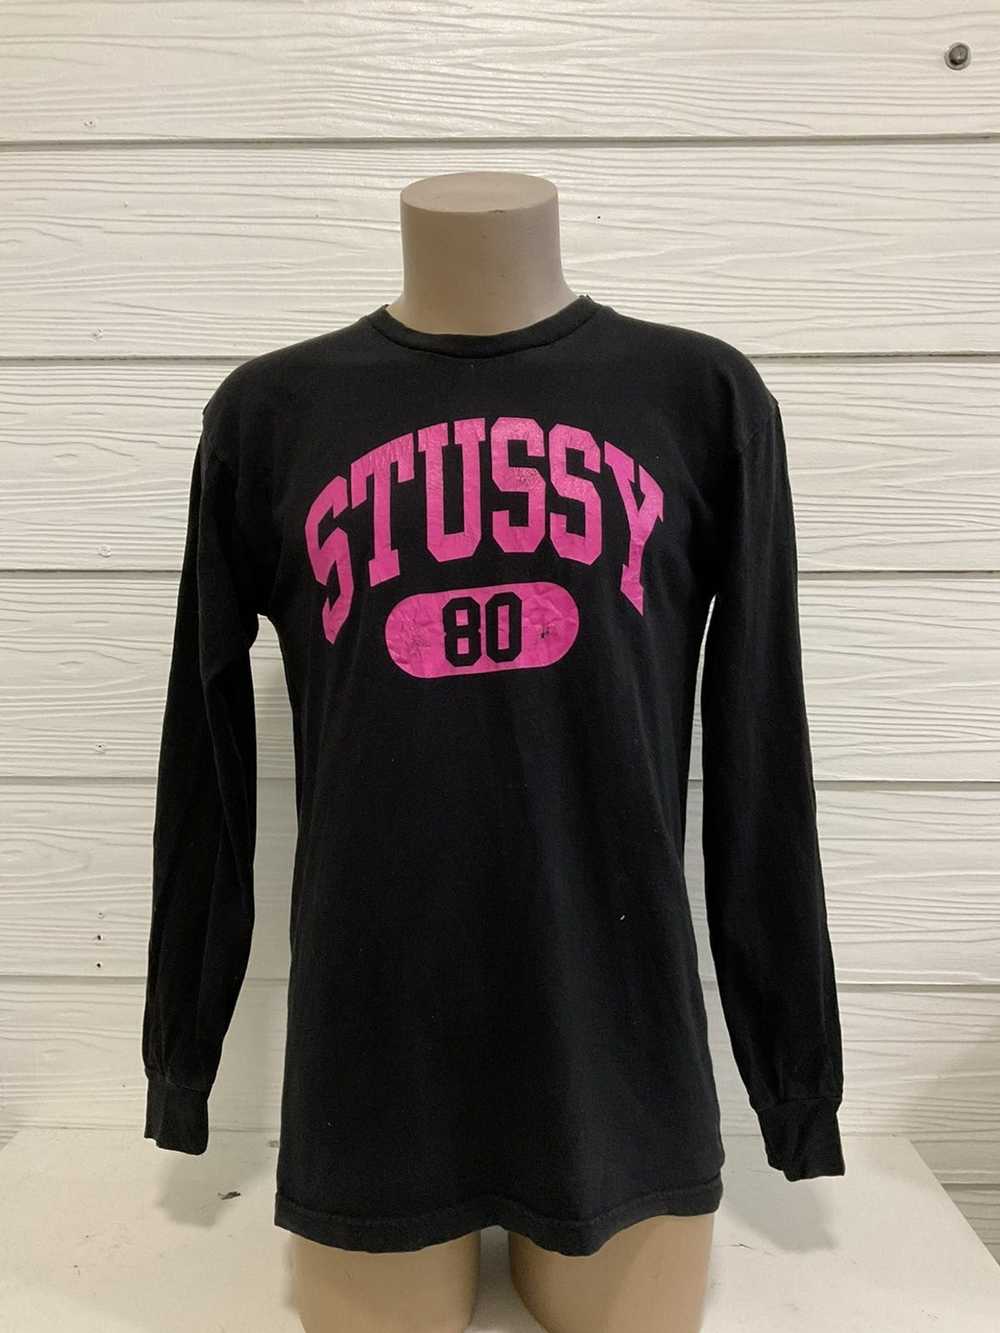 Streetwear × Stussy Stussy 80 tee - image 1